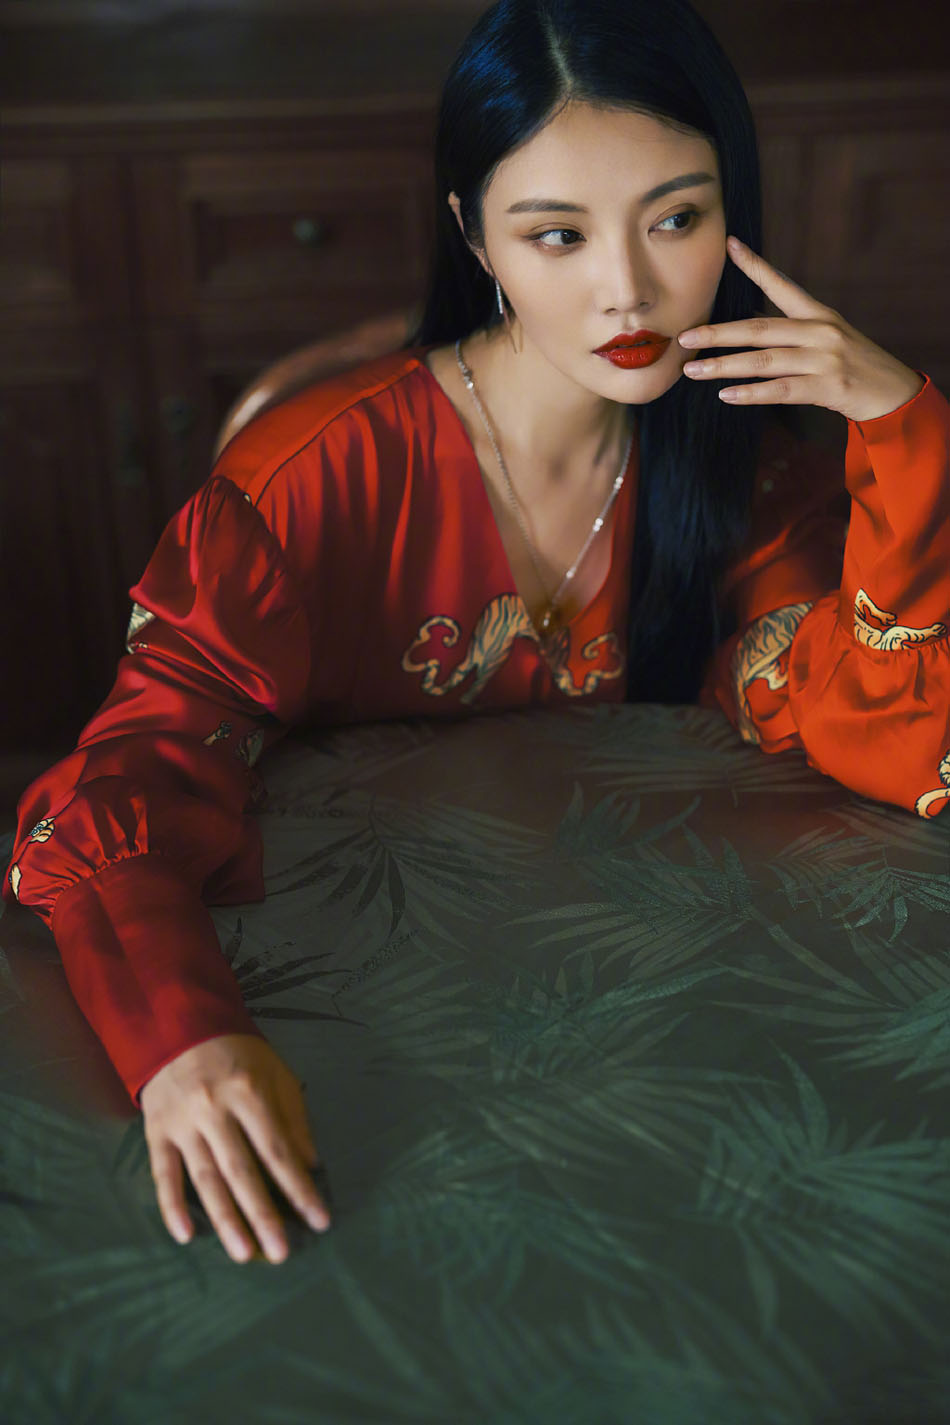 徐冬冬性感中国红式丝绸睡袍妖娆性感复古写真照